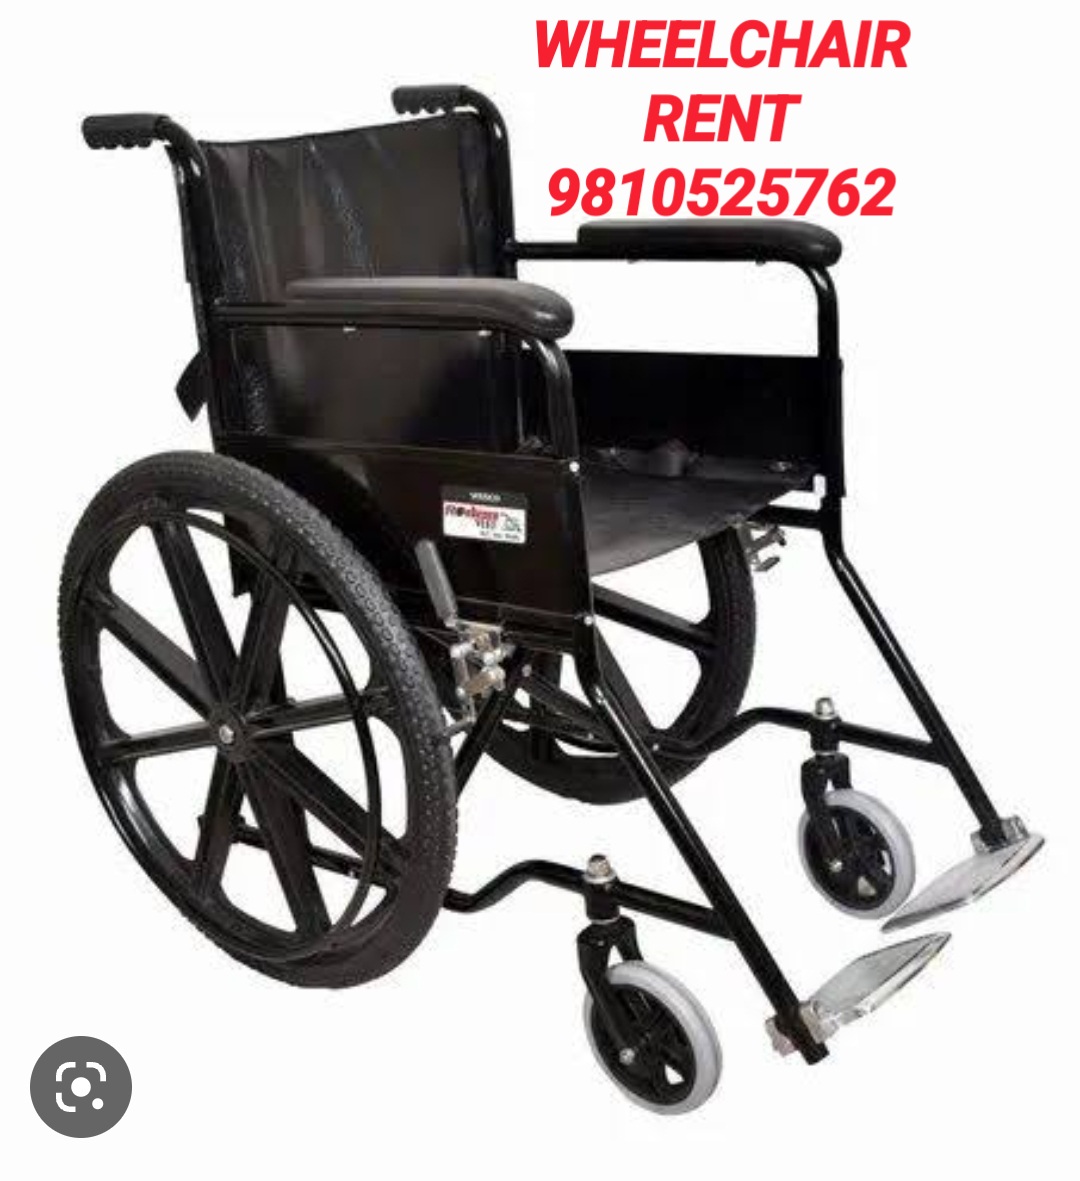 wheelchair for patients 24*7 rent ghaziabad delhi 8178463439